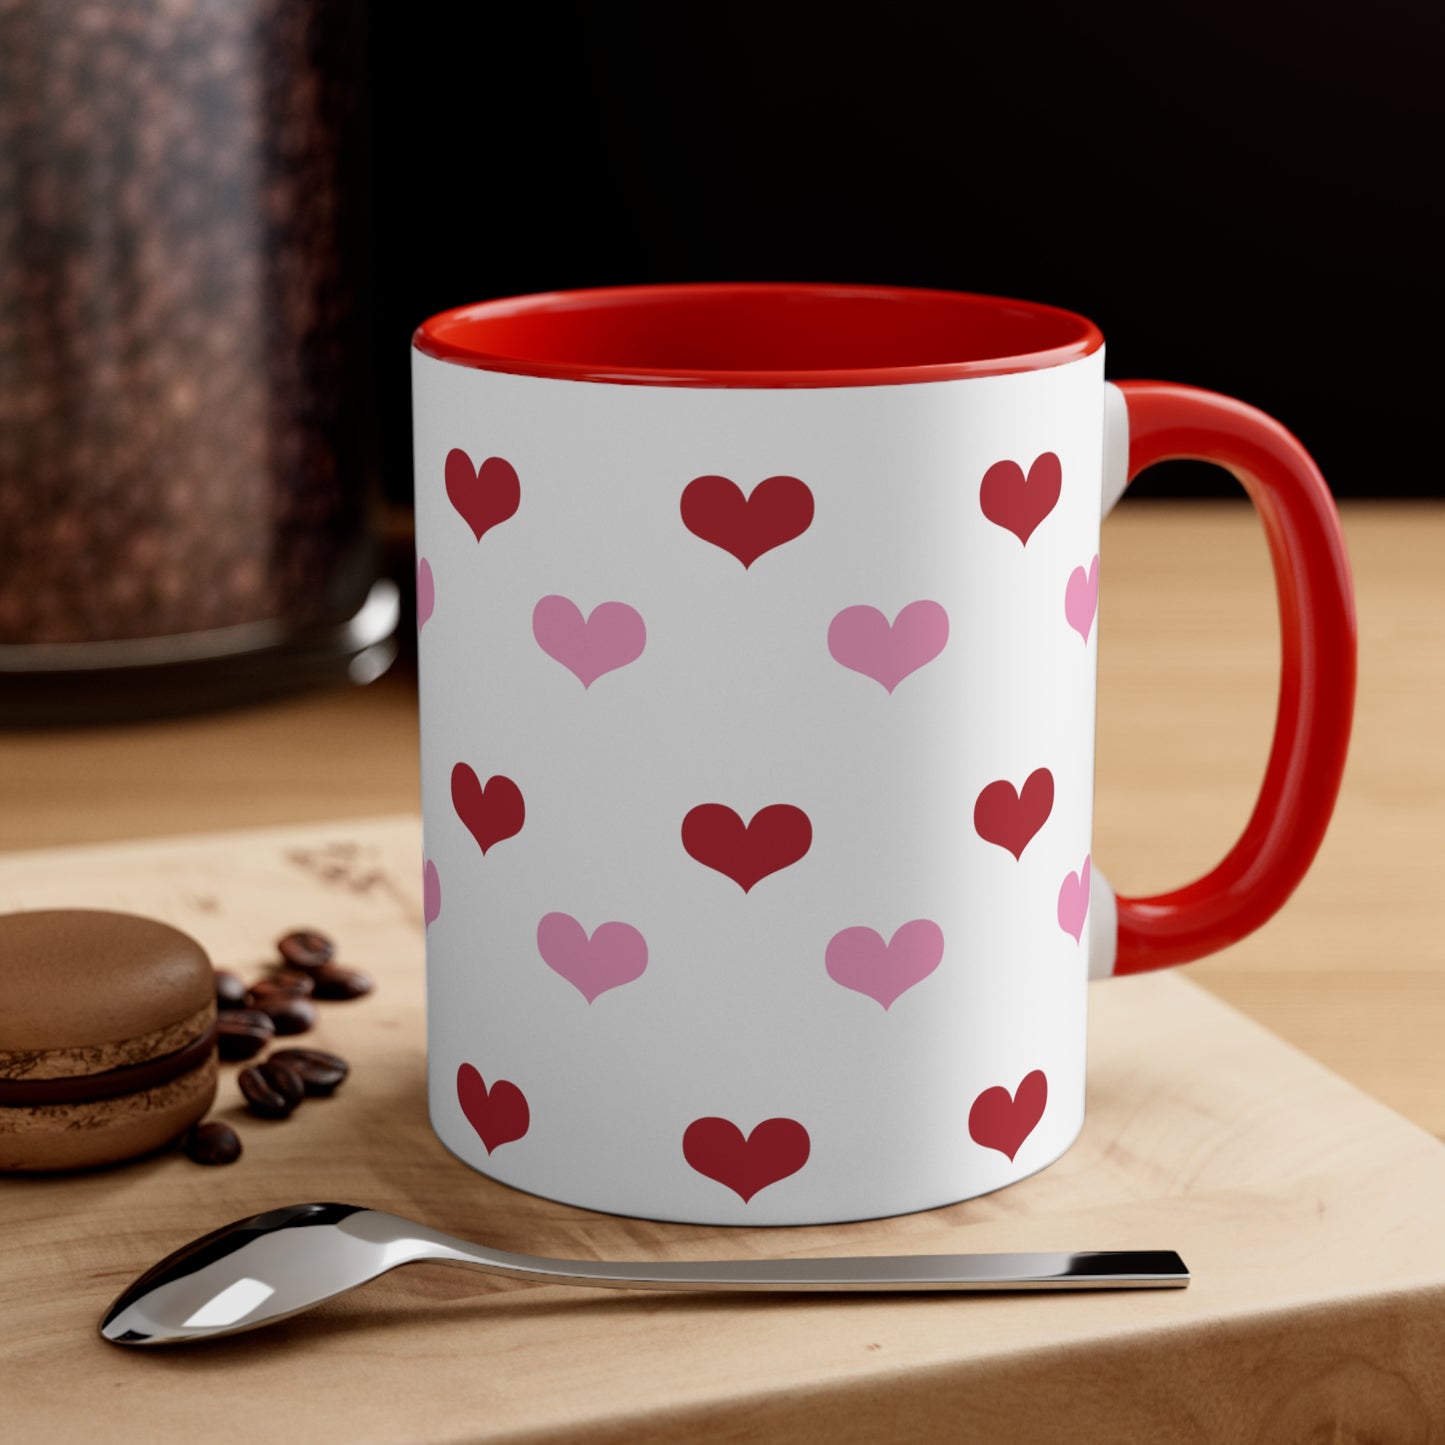 Double Hearts Mug